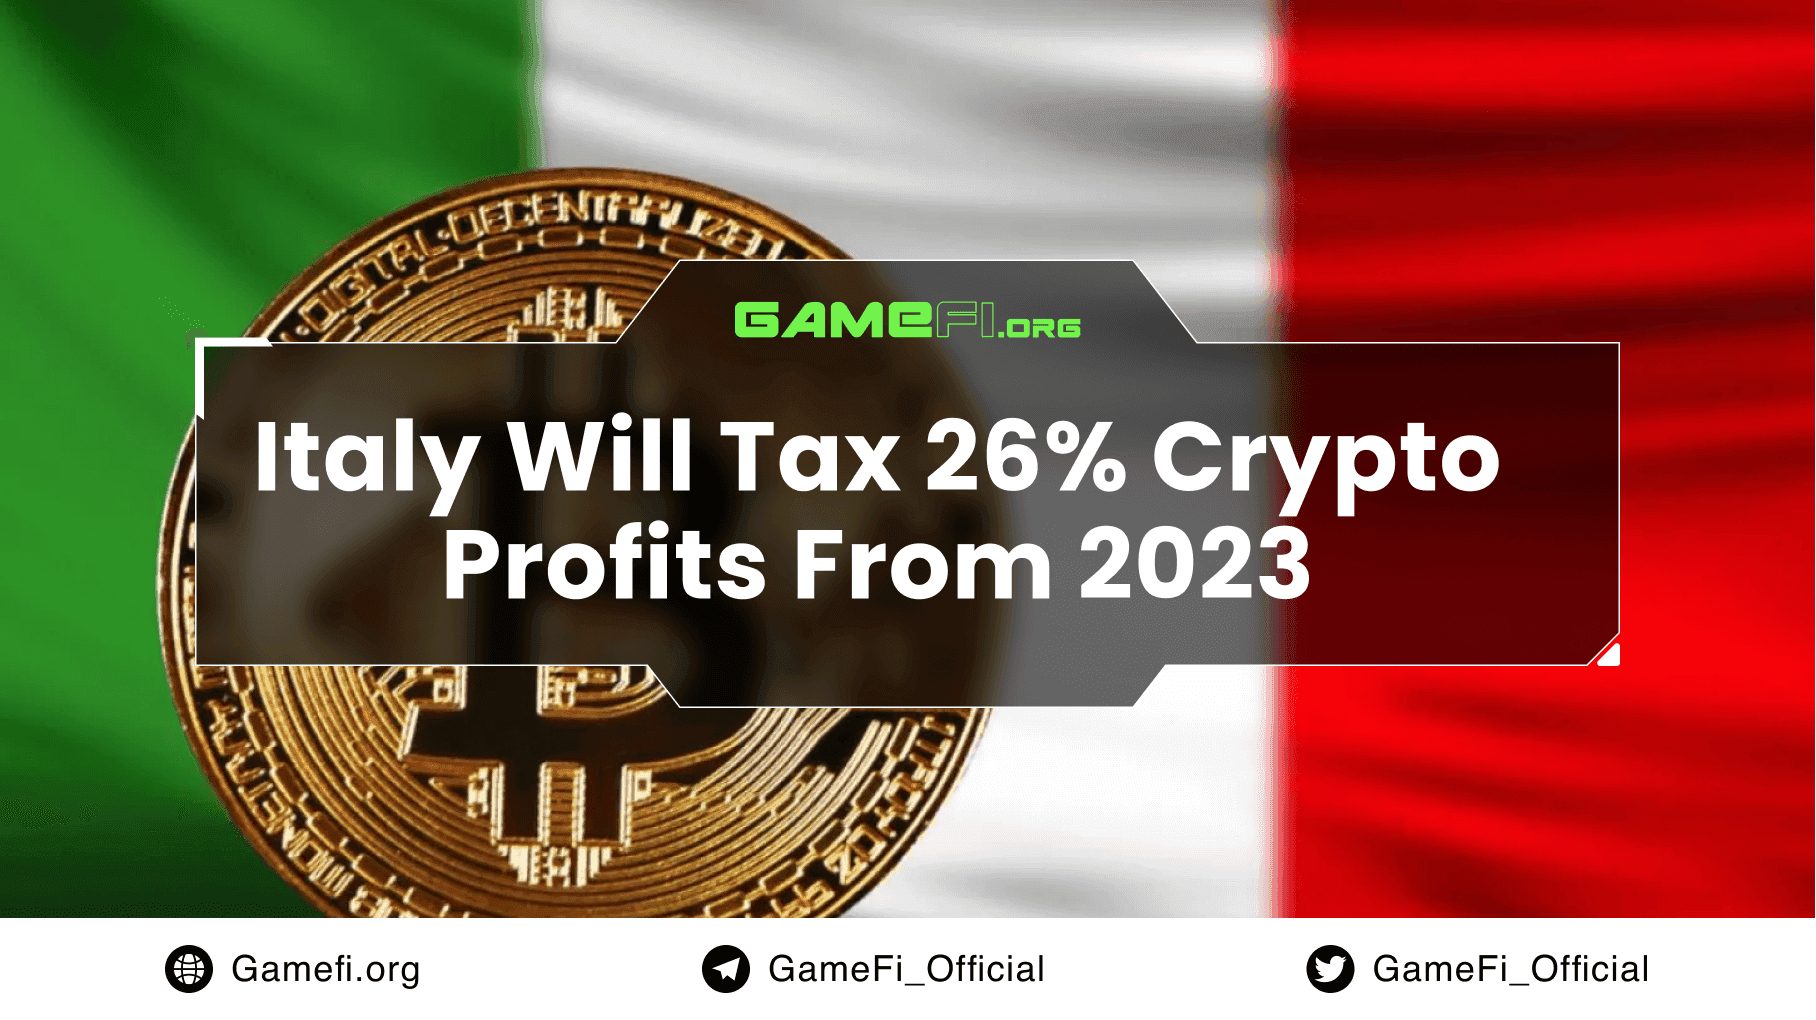 Italy Will Tax Crypto Profits 26% From 2023